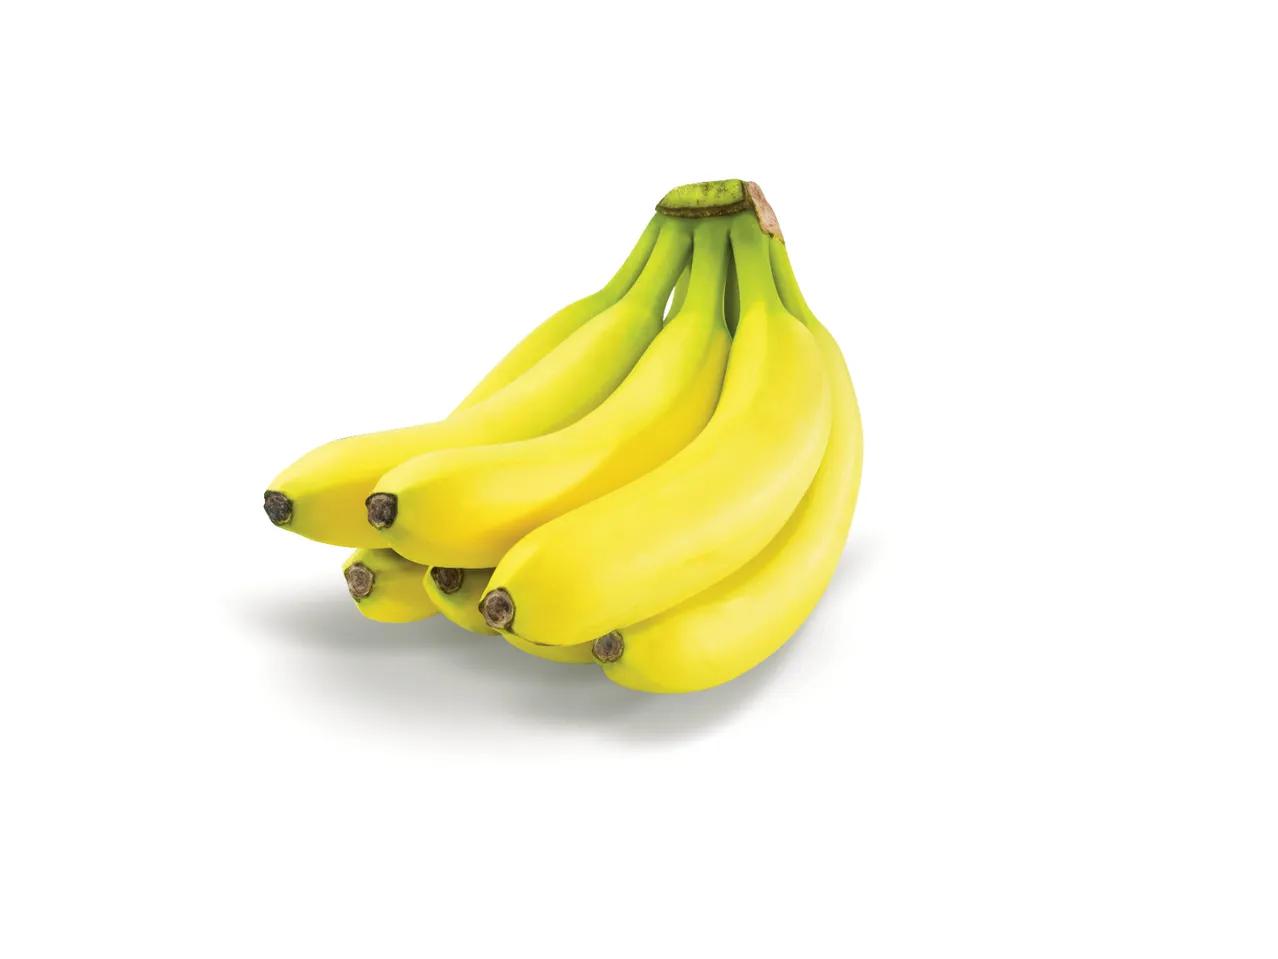 Prekė: Bananai